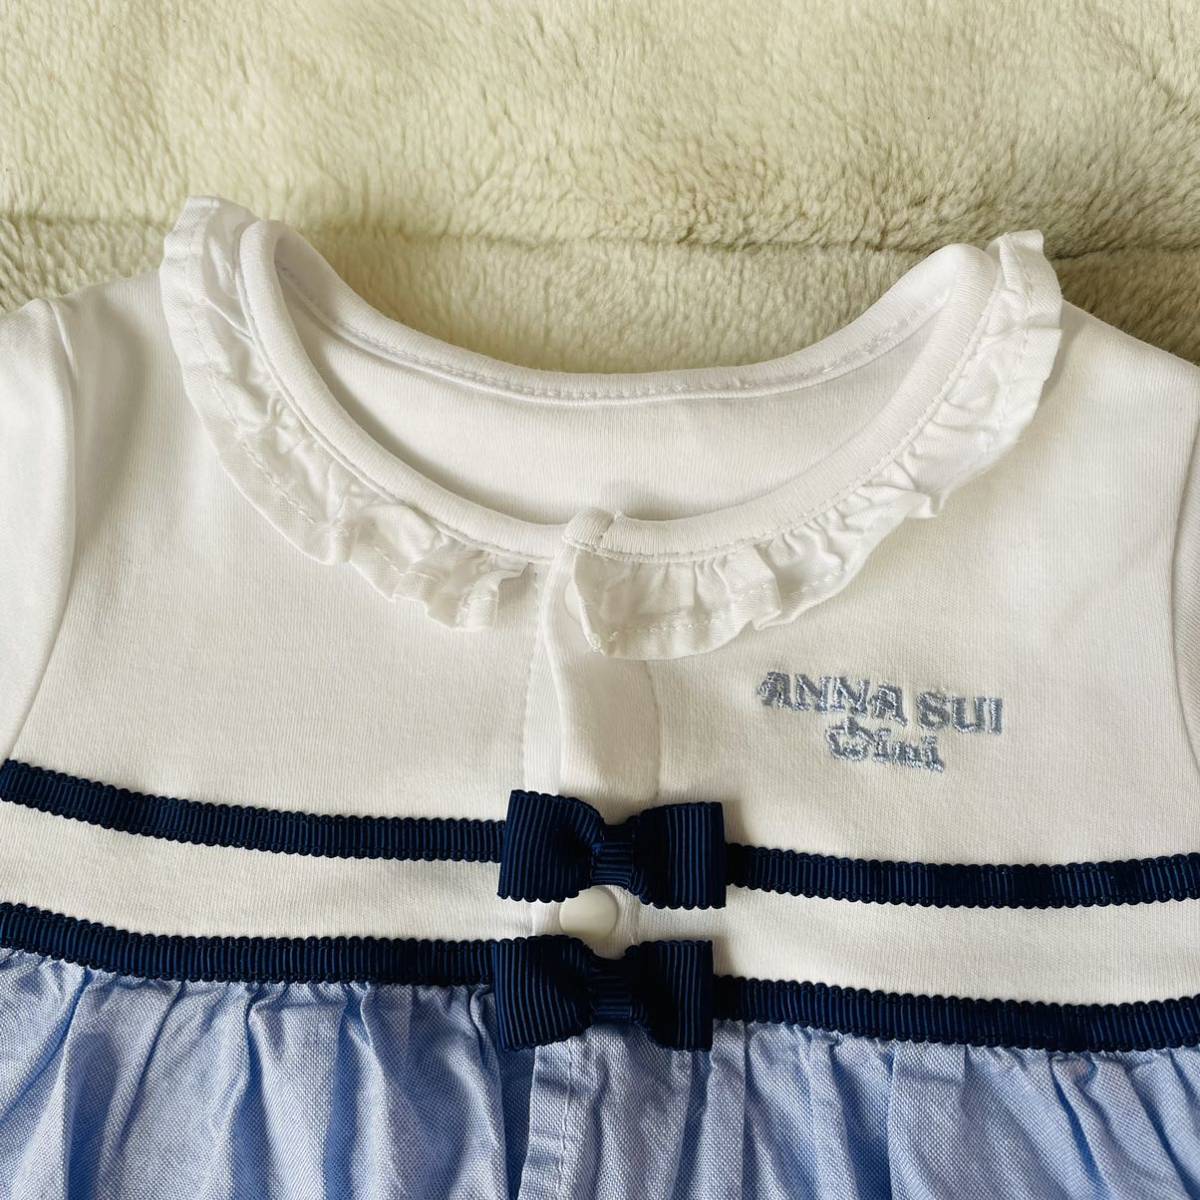 アナスイミニ ANNA SUI mini カバーオール 2wayオール 未使用に近い ベビー服 ロンパース ドレスオール